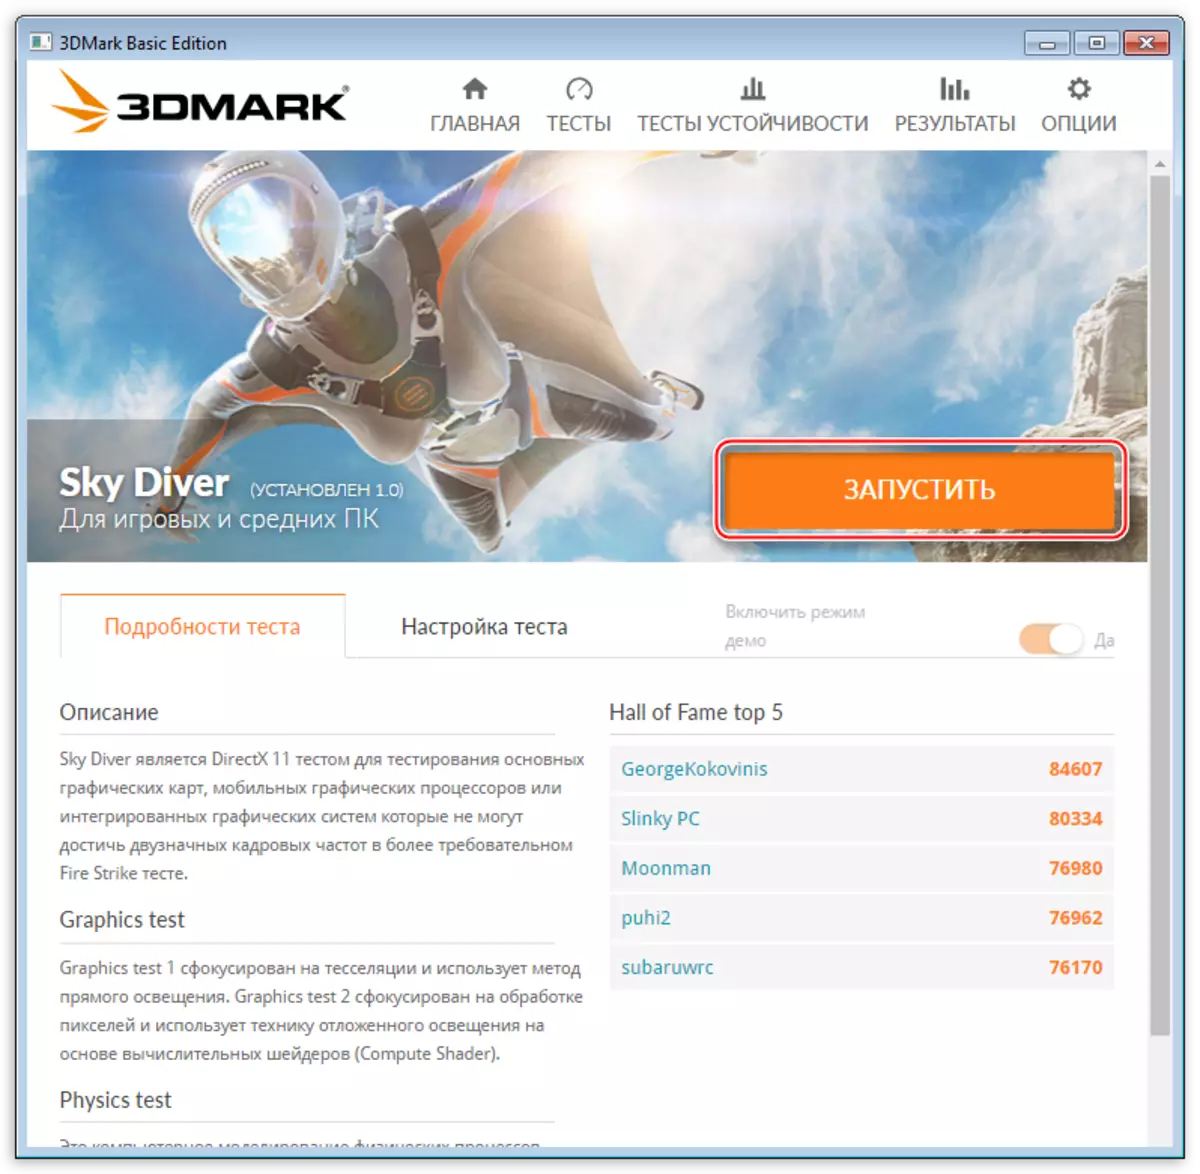 Execució del programa de prova de Sky Diver 3DMark de Futuremark els desenvolupadors de sistemes de prova